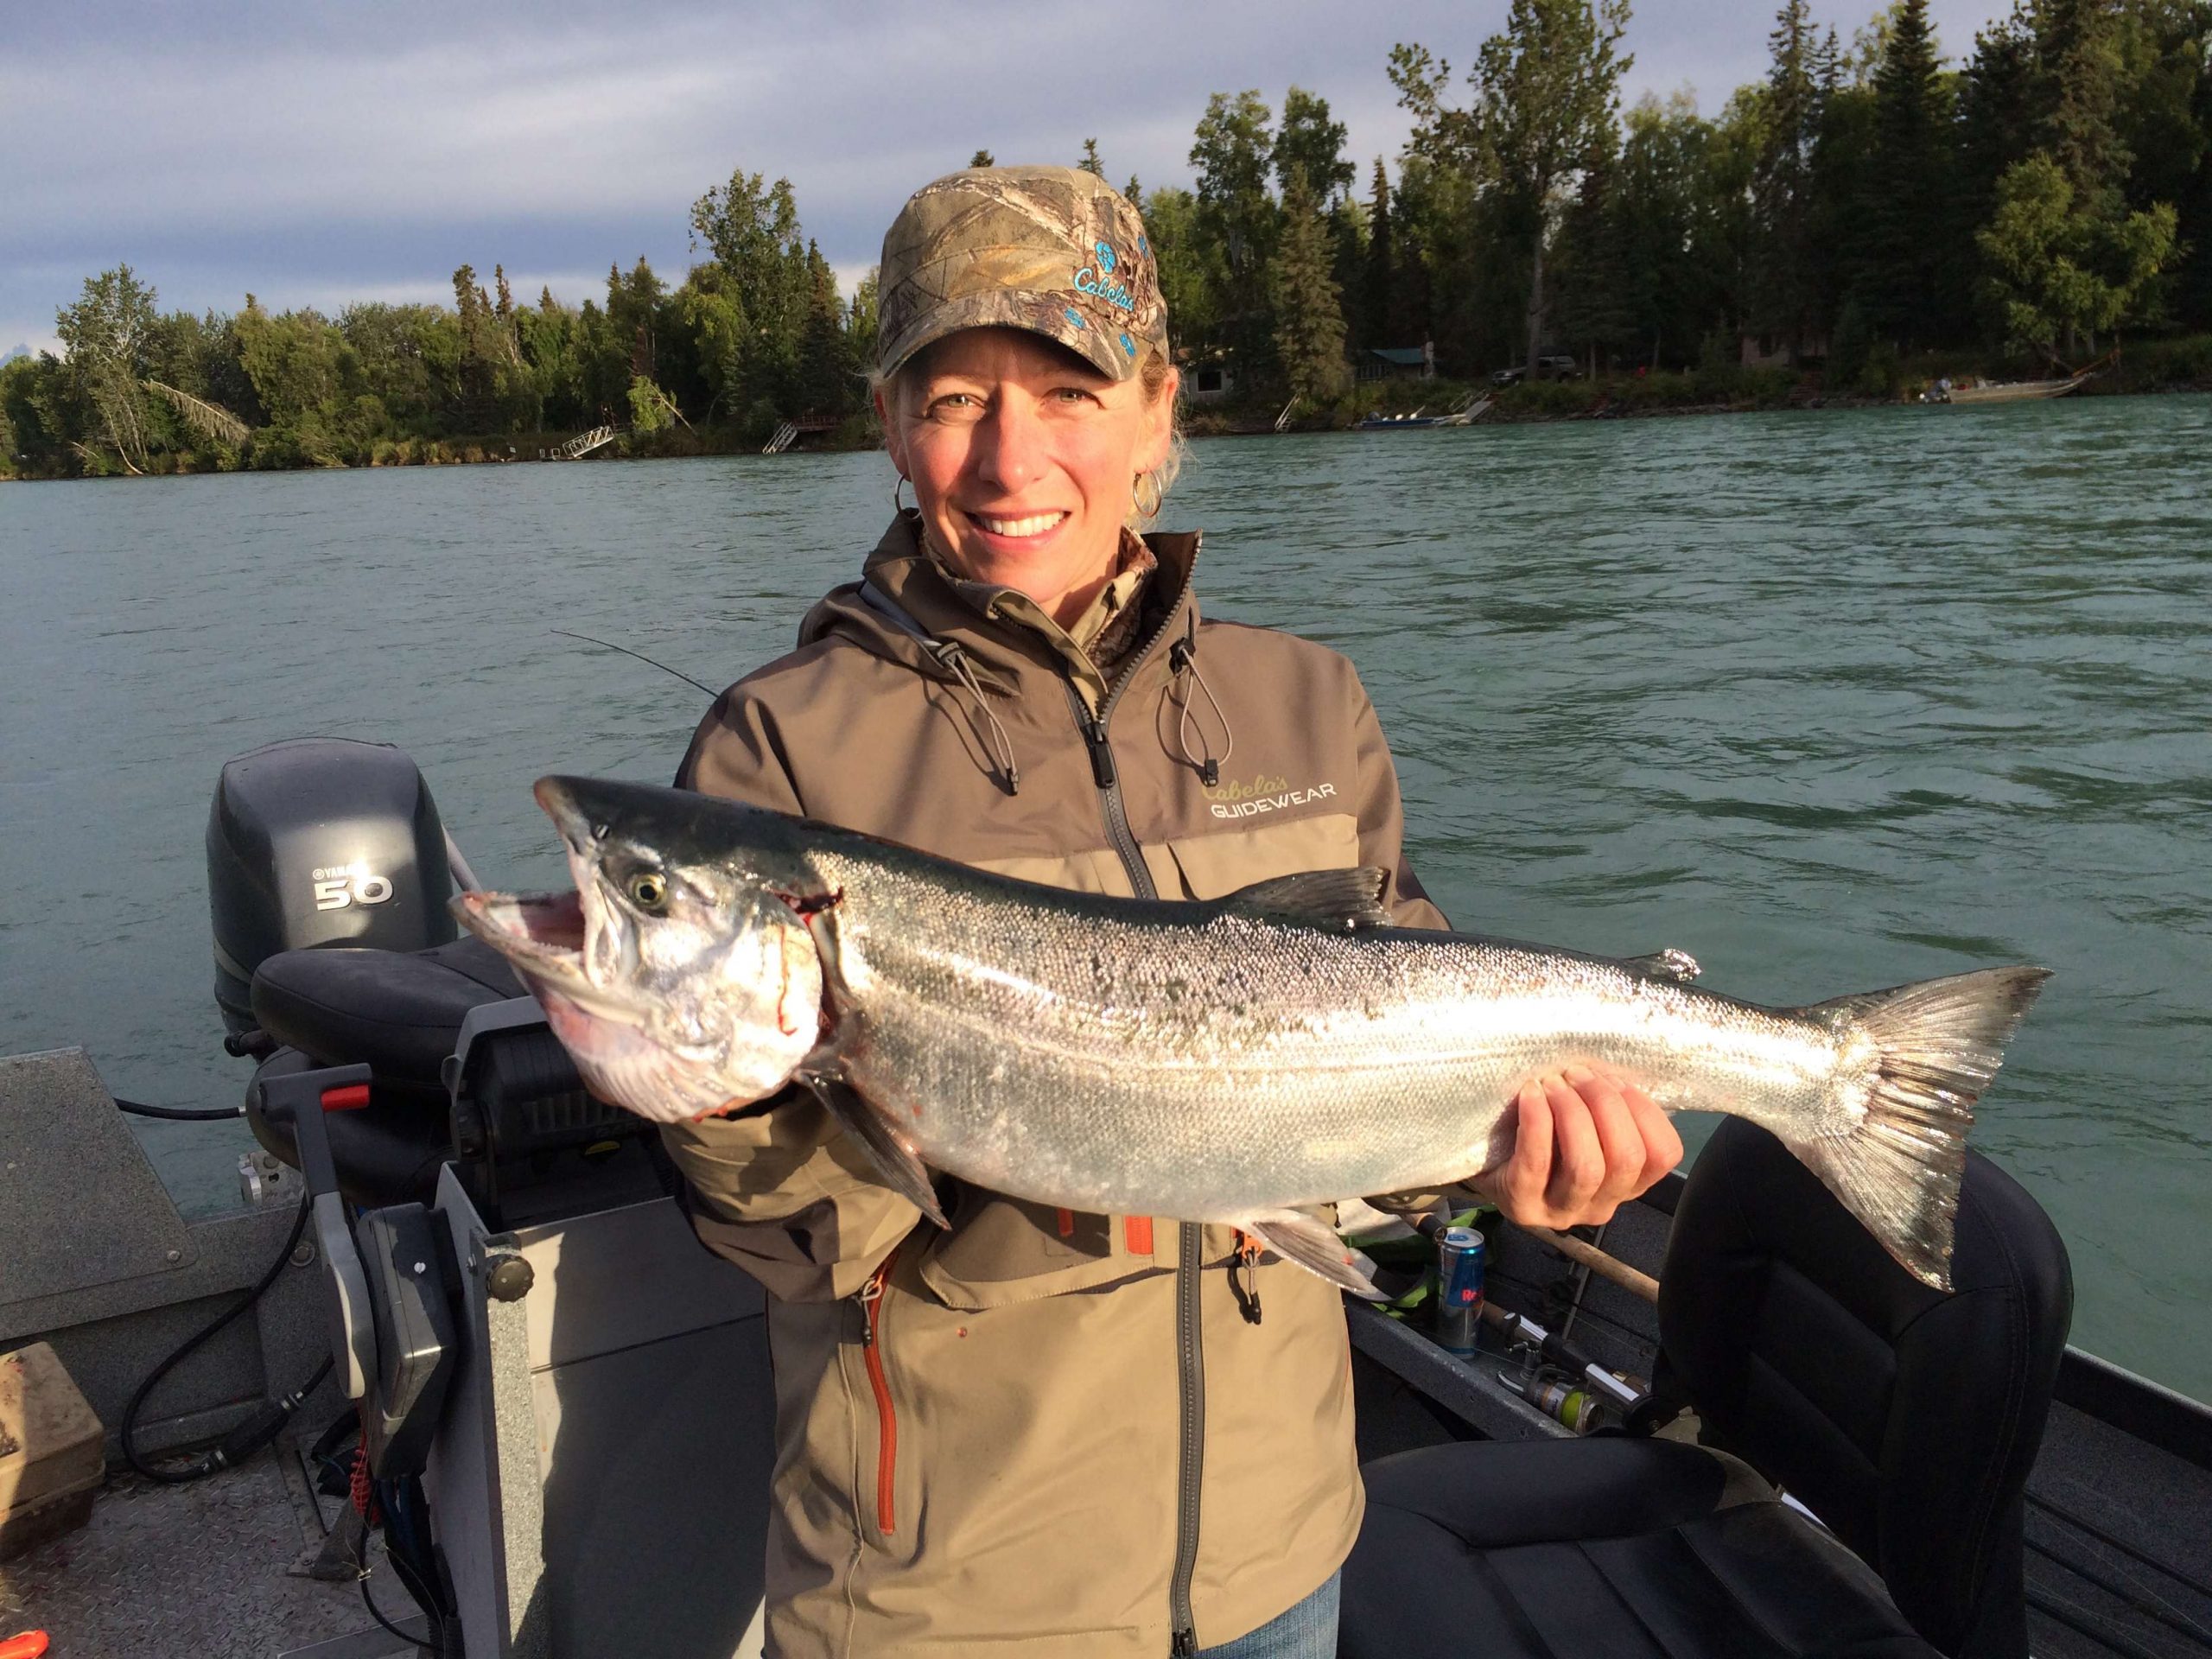 Kenai River Classic contestant Carri Ann Pratt of Cabelaâs in Anchorage shows off a big silver salmon.